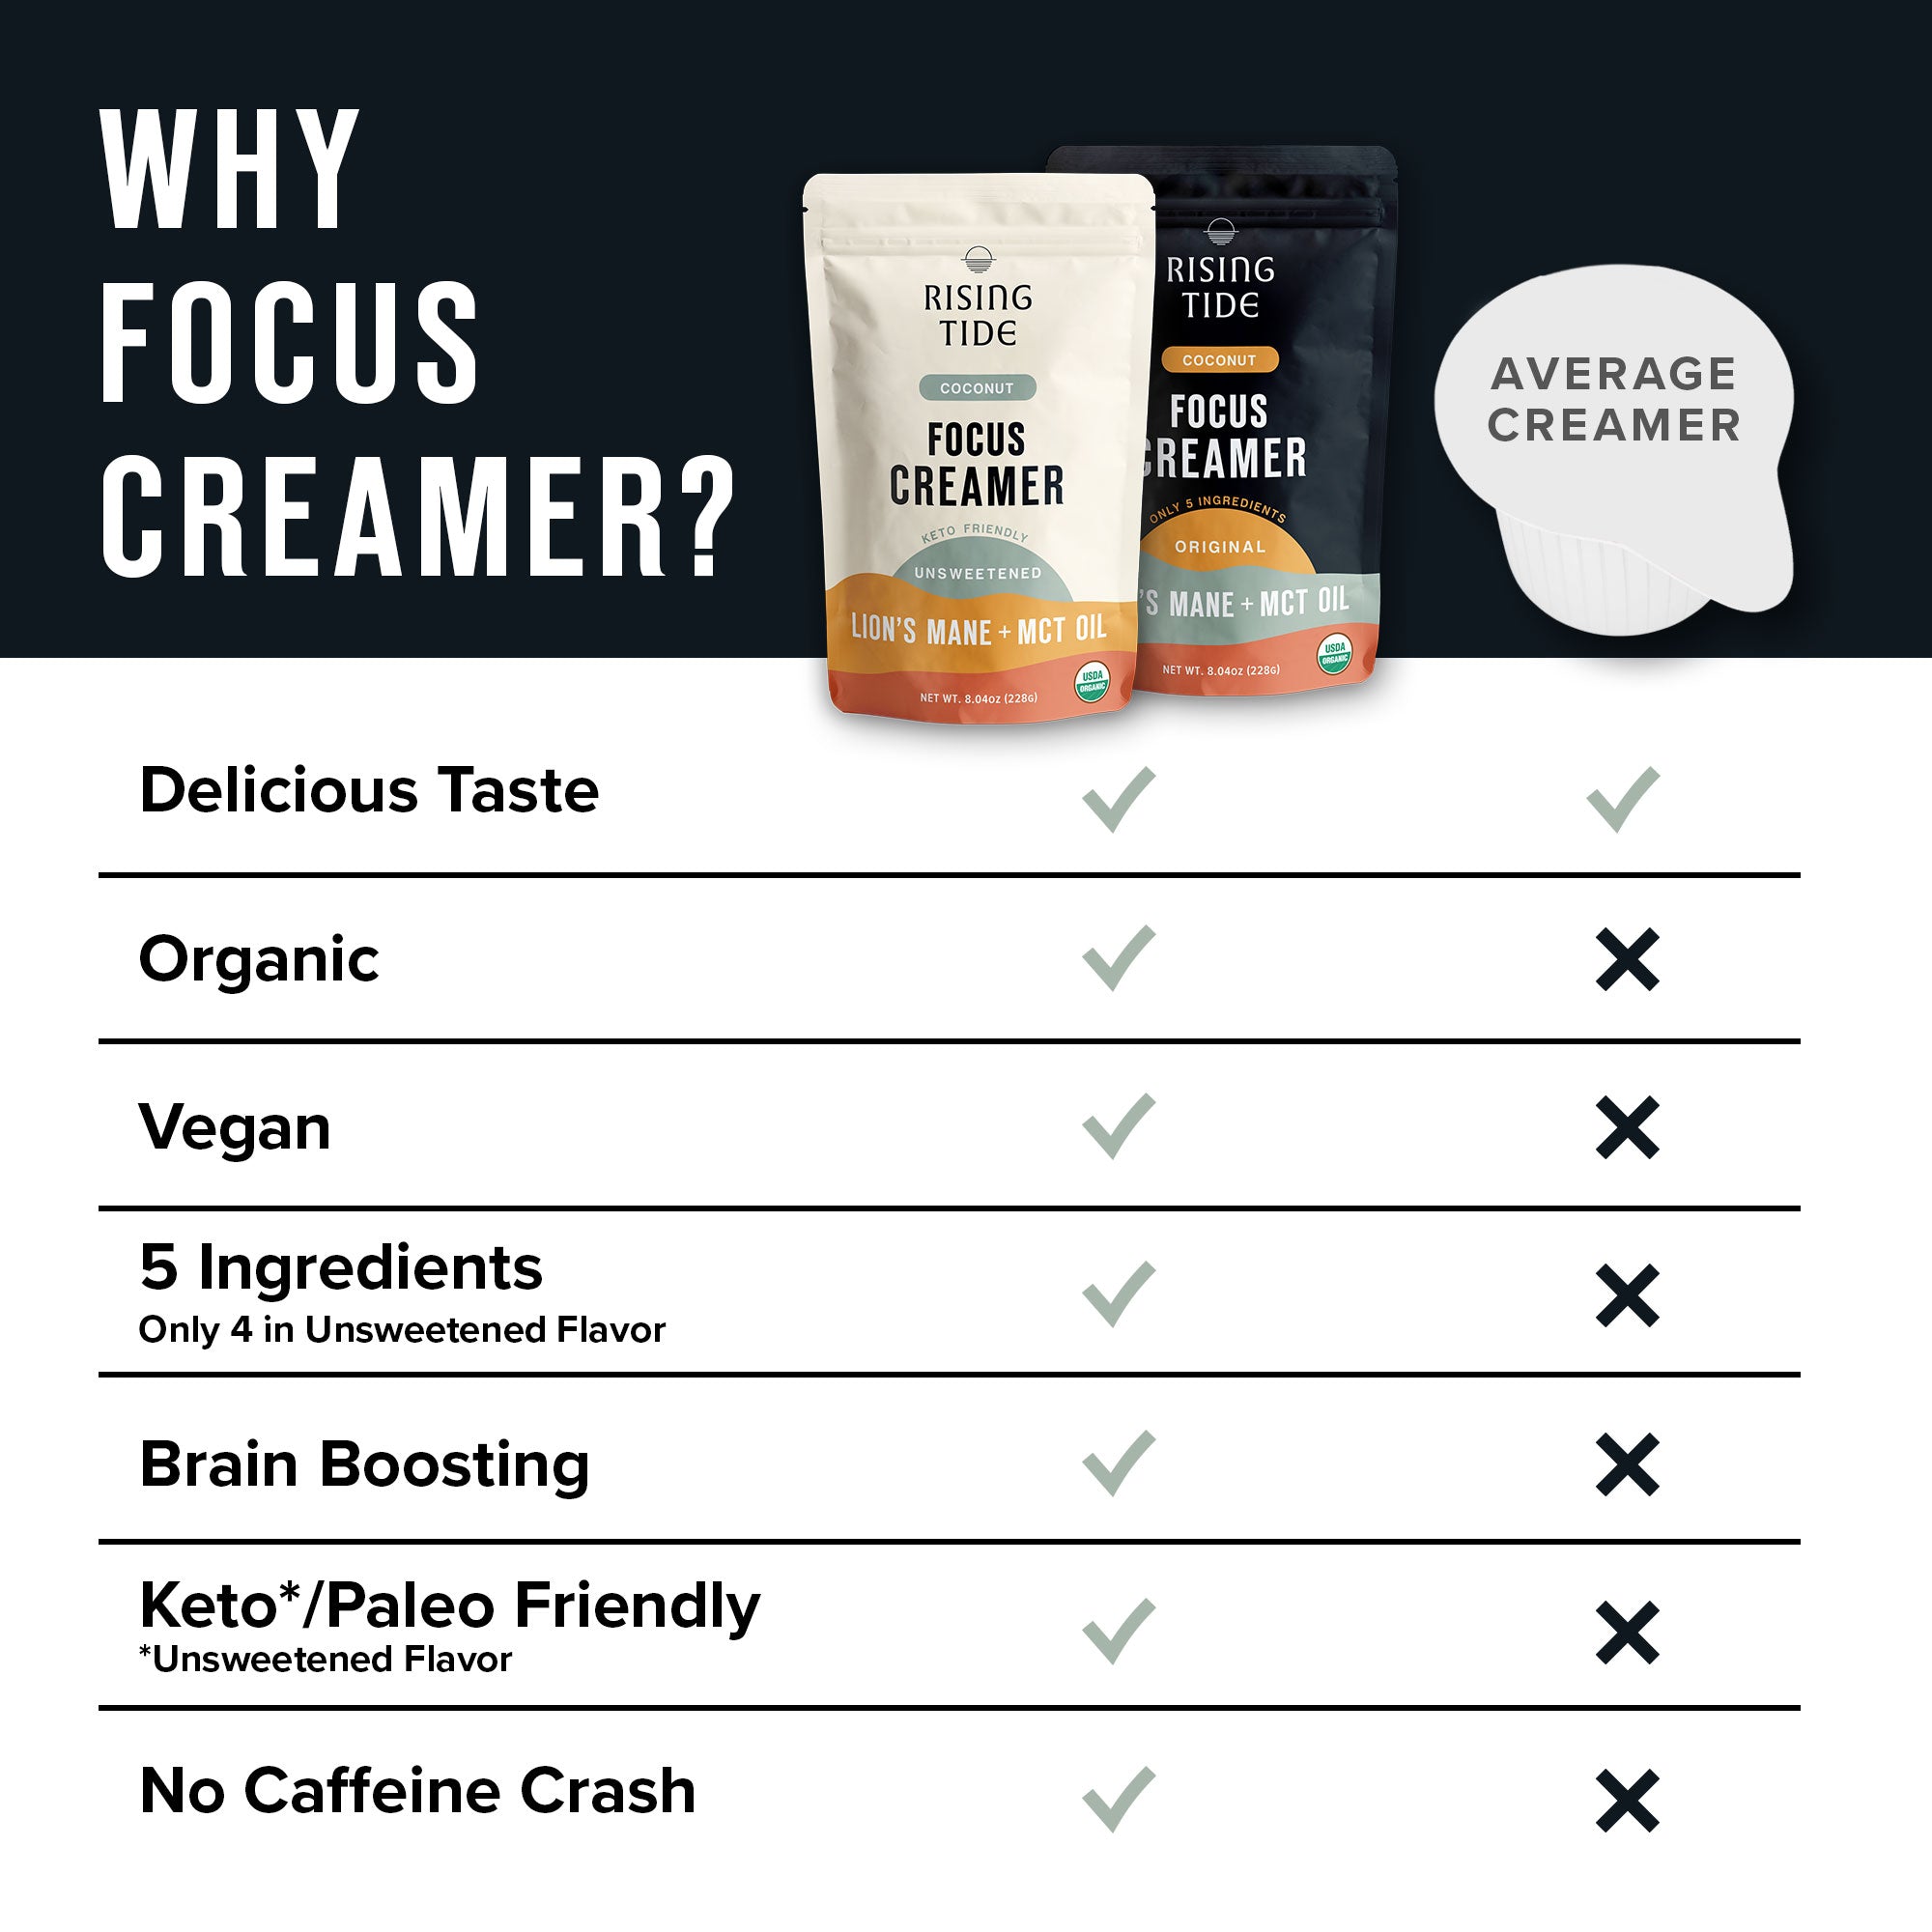 Focus Creamer